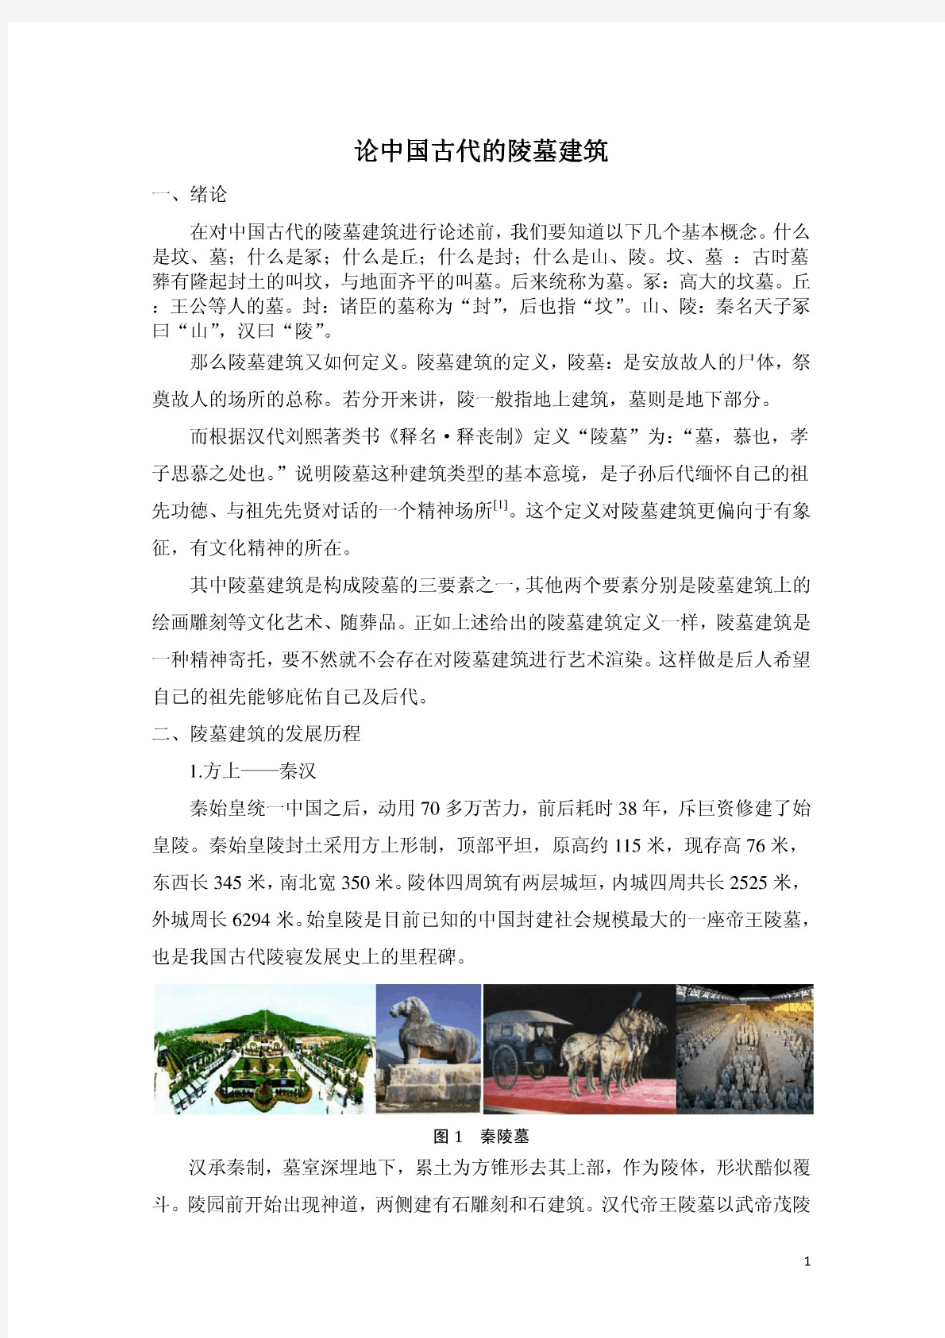 毕业论文设计论中国古代的陵墓建筑.pdf